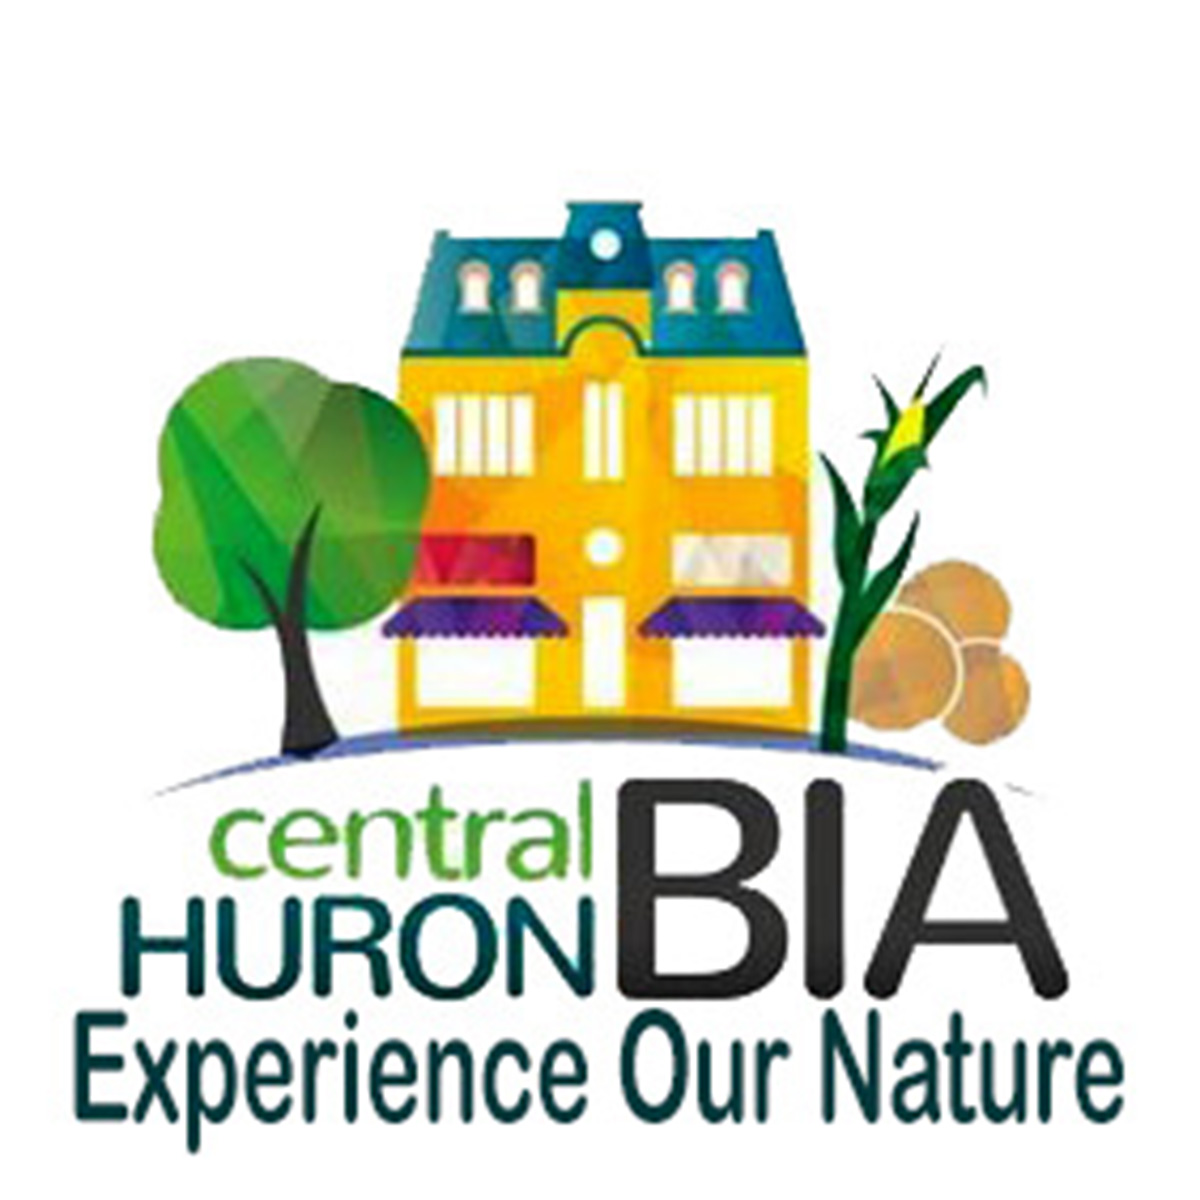 Clinton & Central Huron BIA logo